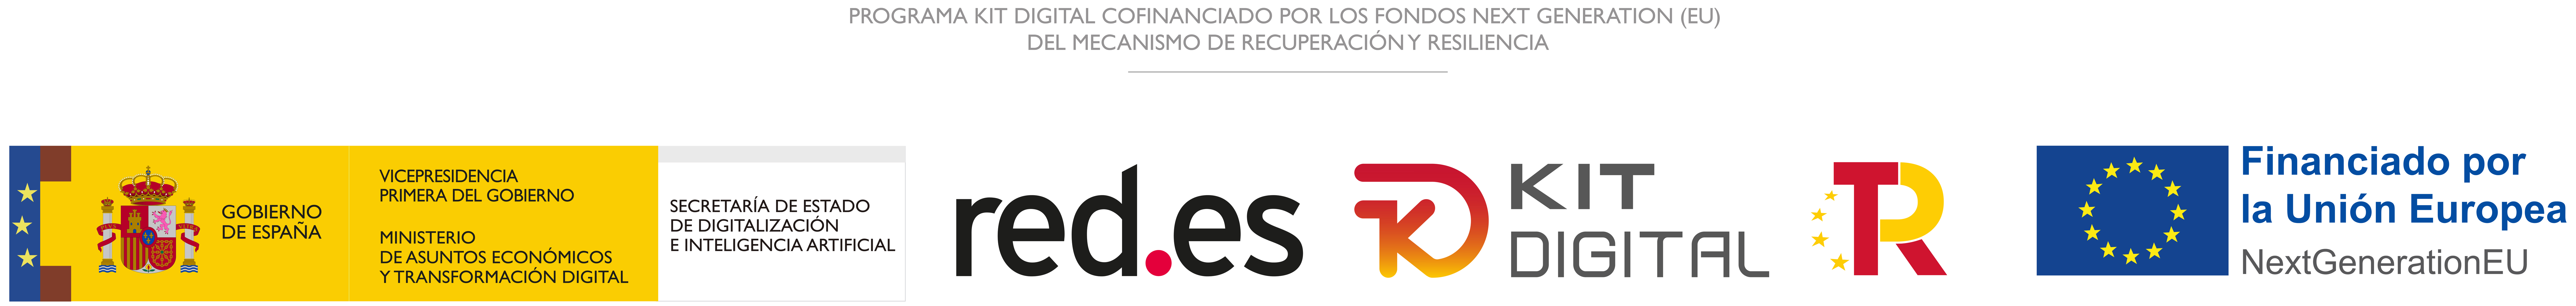 Logo
Kit Digital, red.es y Financiado por la Unión Europea